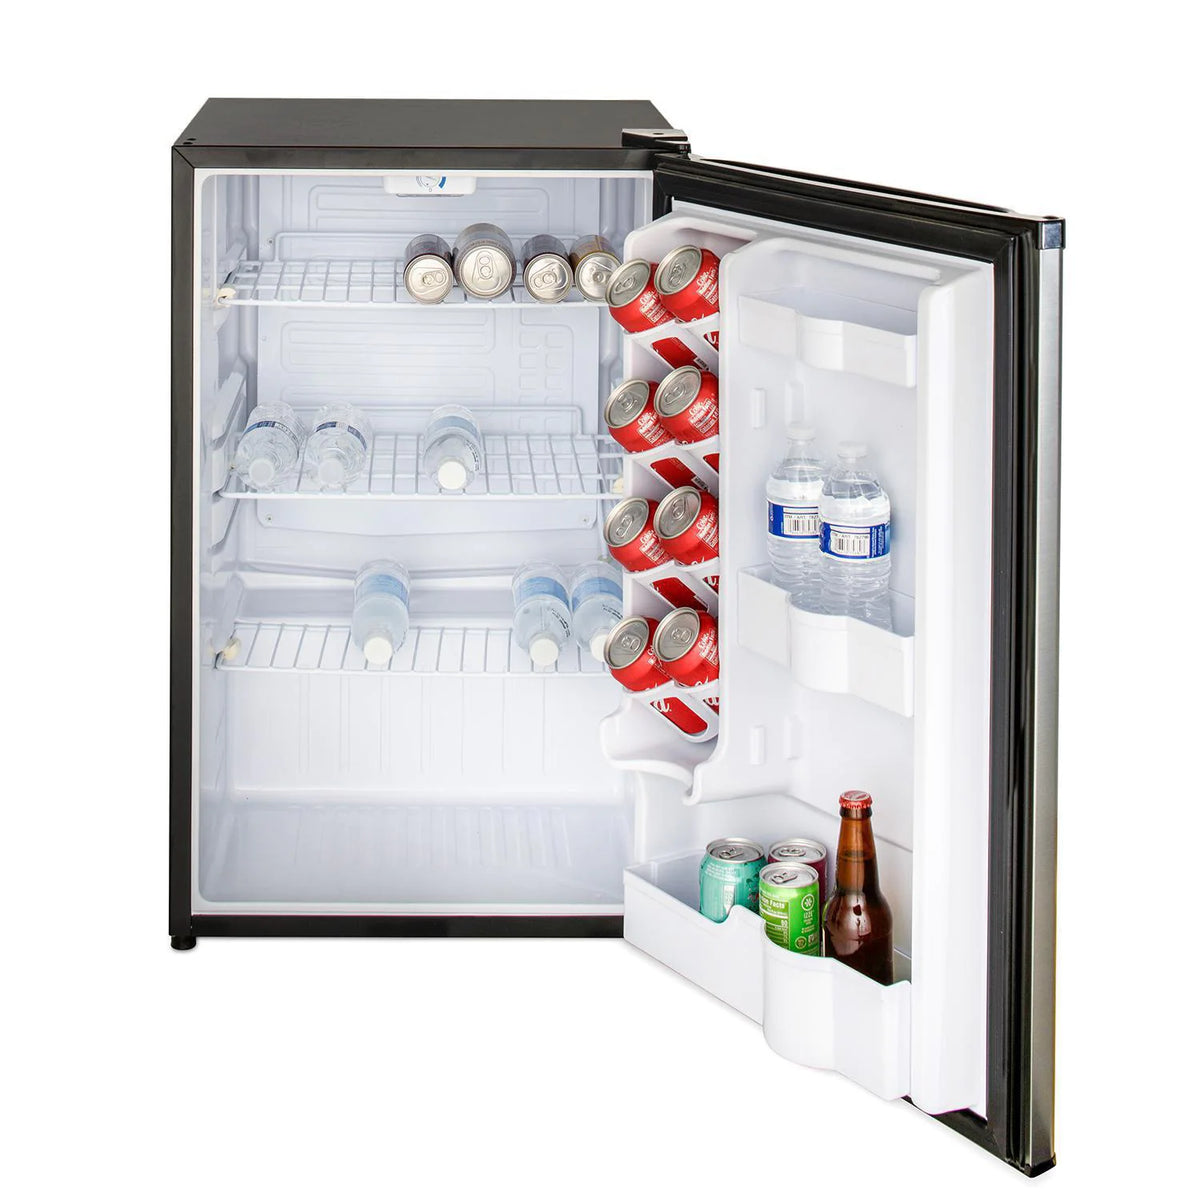 Blaze 20 Inch Outdoor Compact Refrigerator Door Open with Drinks